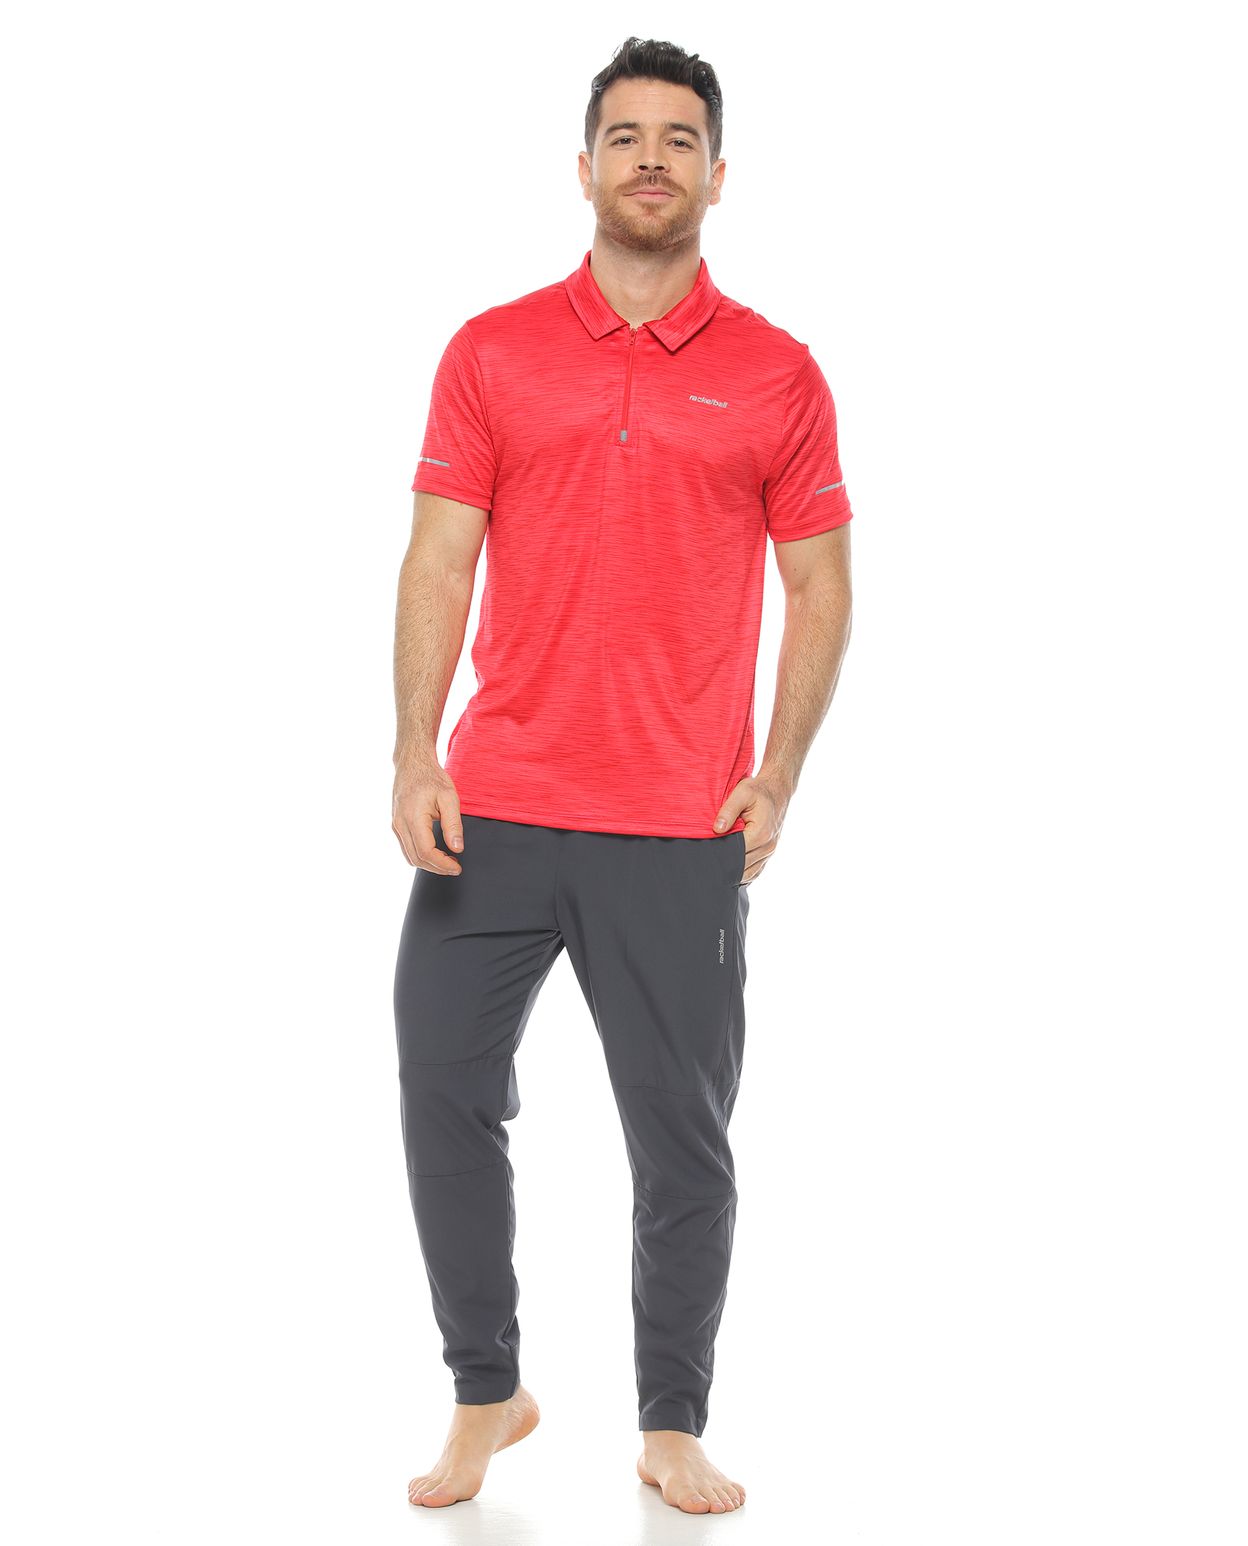 modelo con Pantalón de Sudadera Deportivo Gris y camiseta tipo polo para Hombre parte delantera